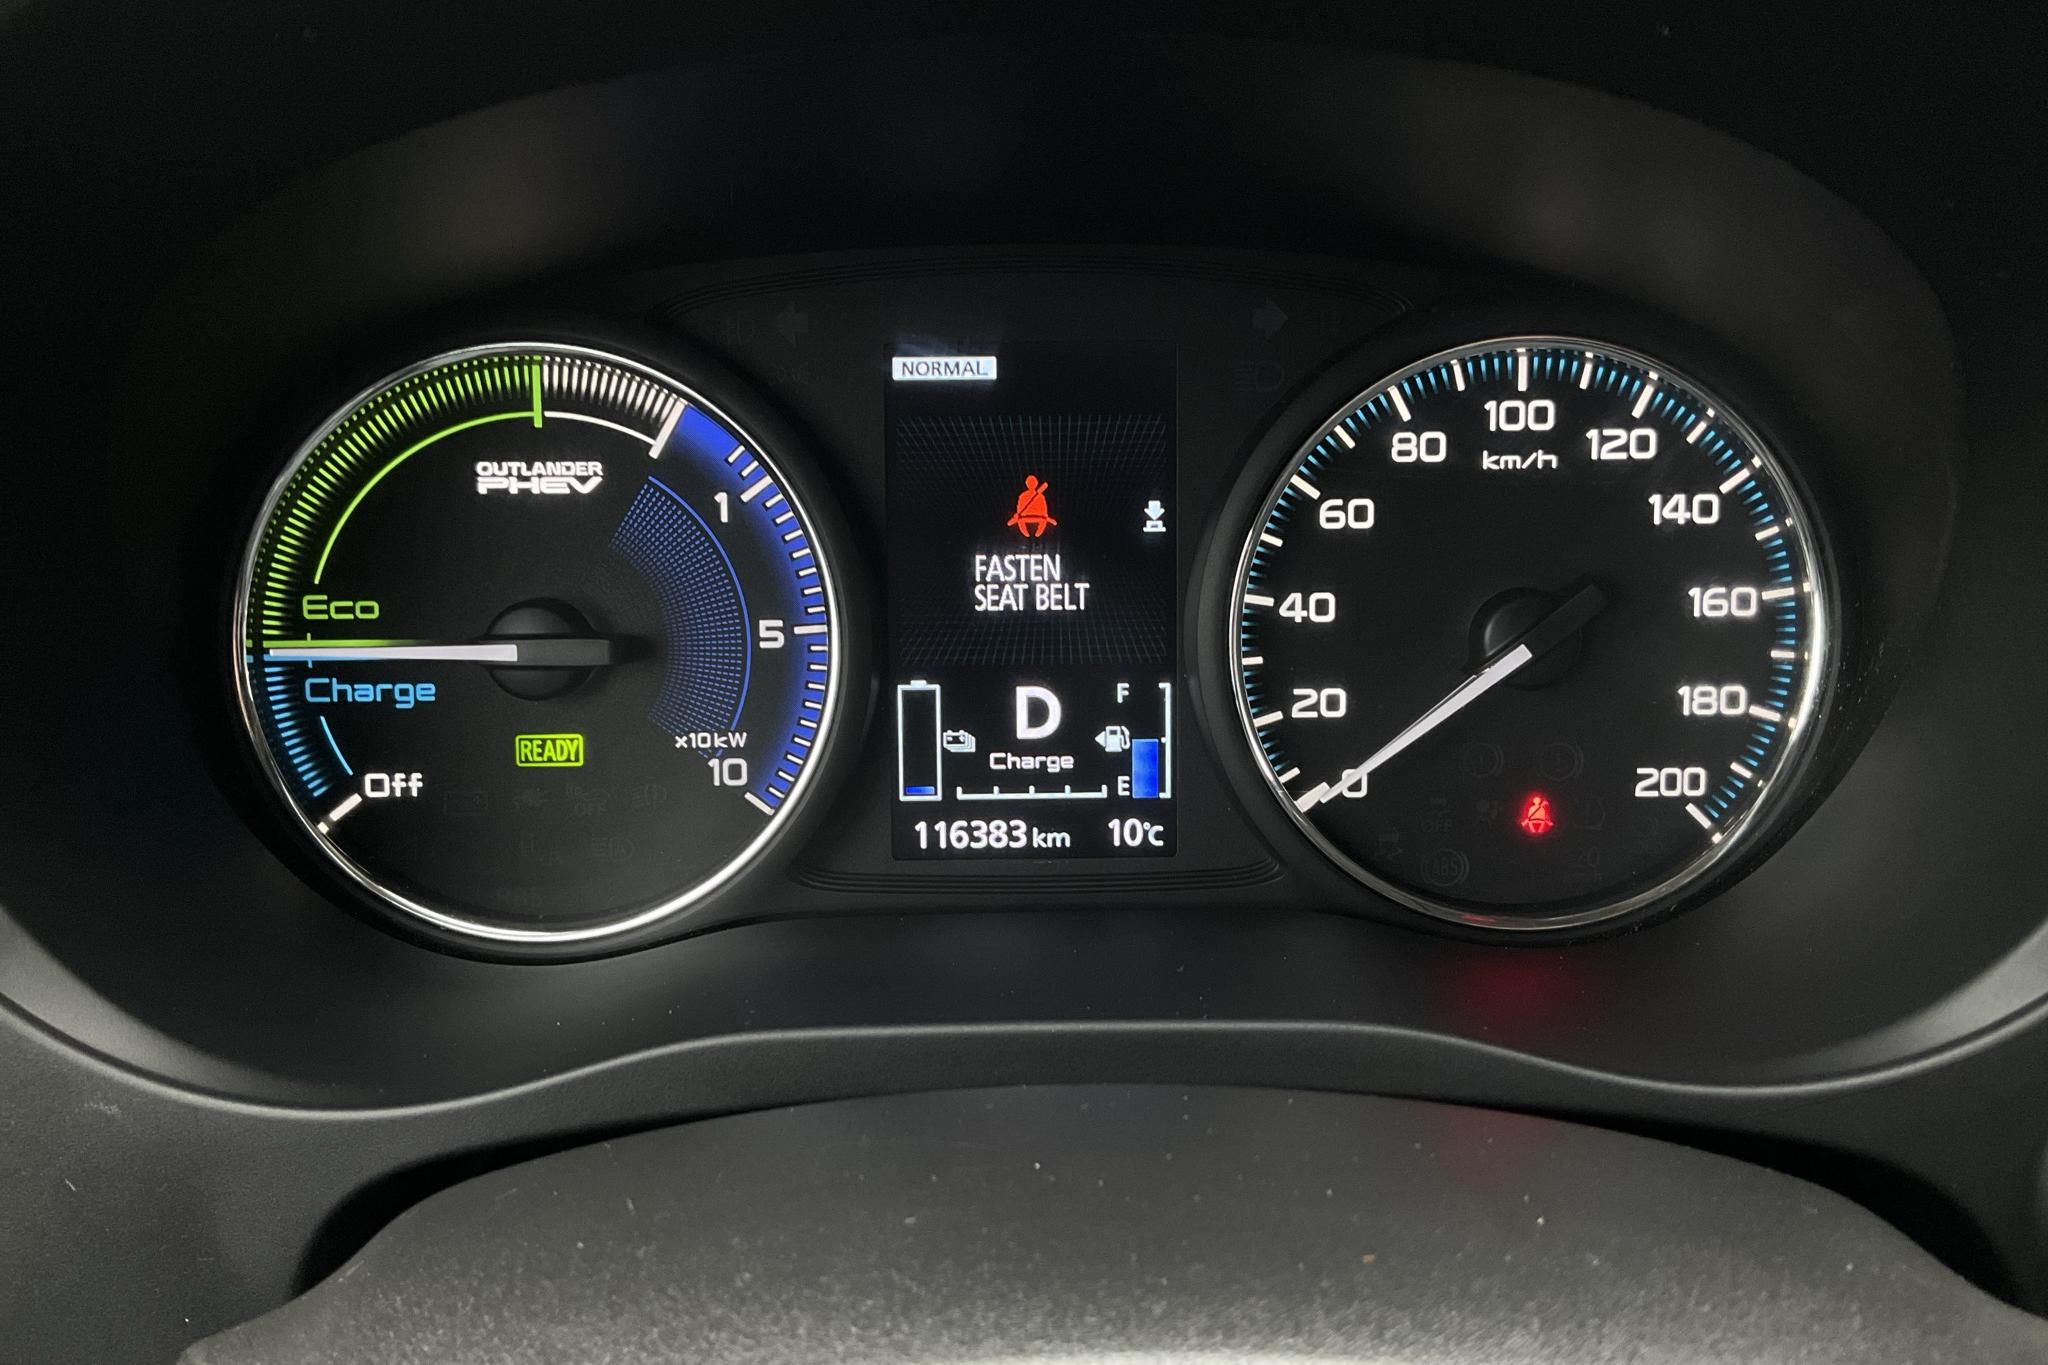 Mitsubishi Outlander 2.4 Plug-in Hybrid 4WD (136hk) - 116 370 km - Automatyczna - czerwony - 2019